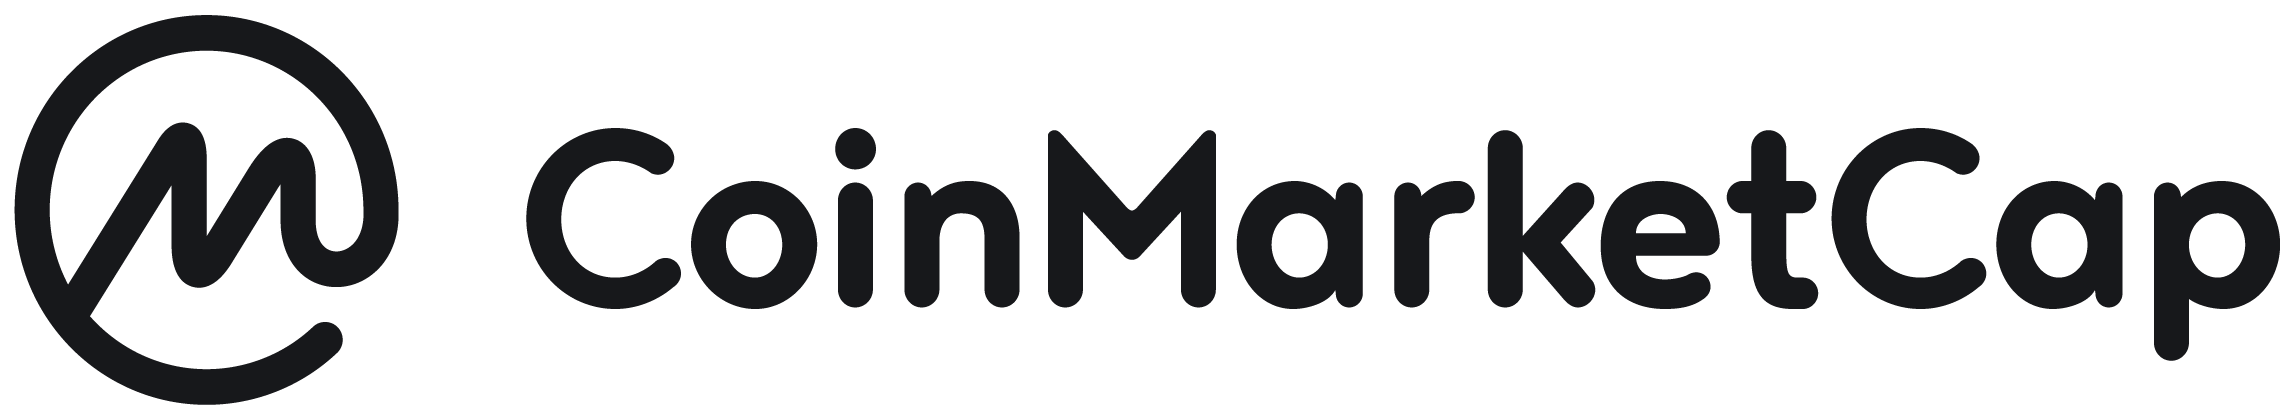 CoinMarketCap logo colors